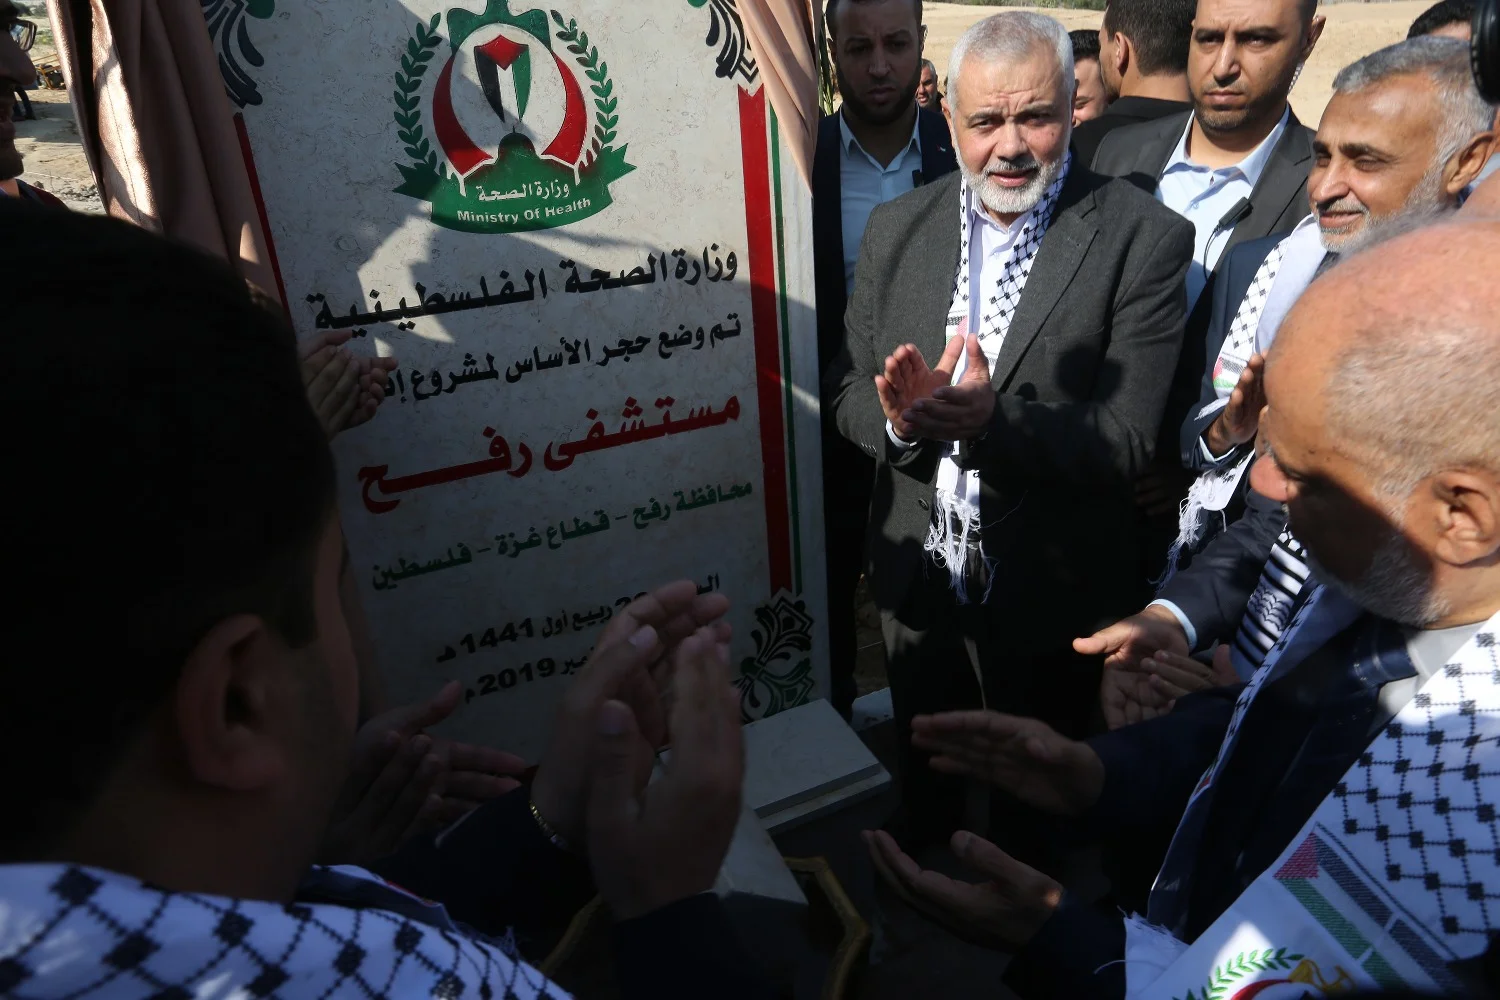 Idee Hamasu po „wyzwoleniu Palestyny”: Żydzi będą mogli wyjechać, ale nie wszyscy